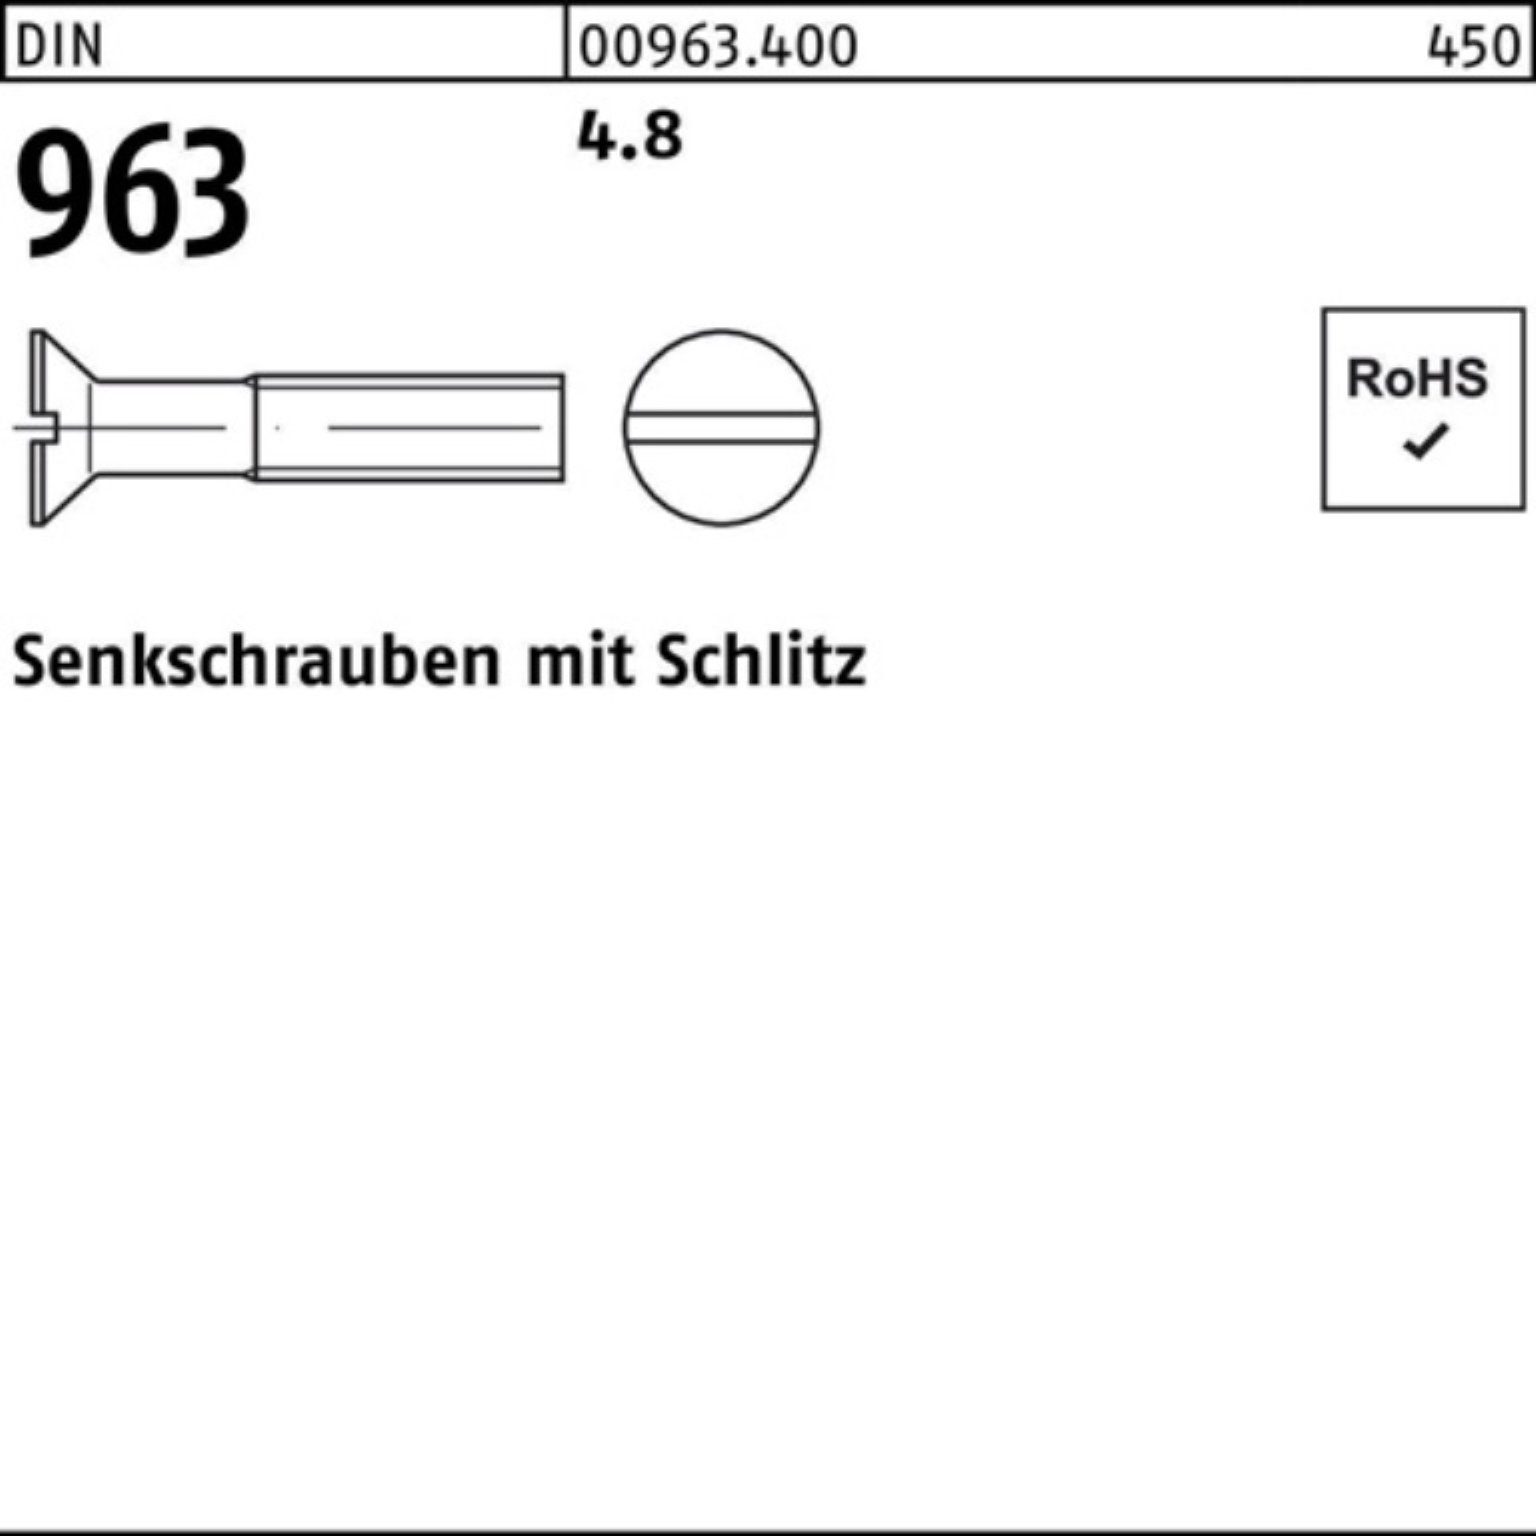 Senkschraube 50 M16x Senkschraube Schlitz Pack DIN Reyher 100er 50 4.8 963 963 Stück DIN